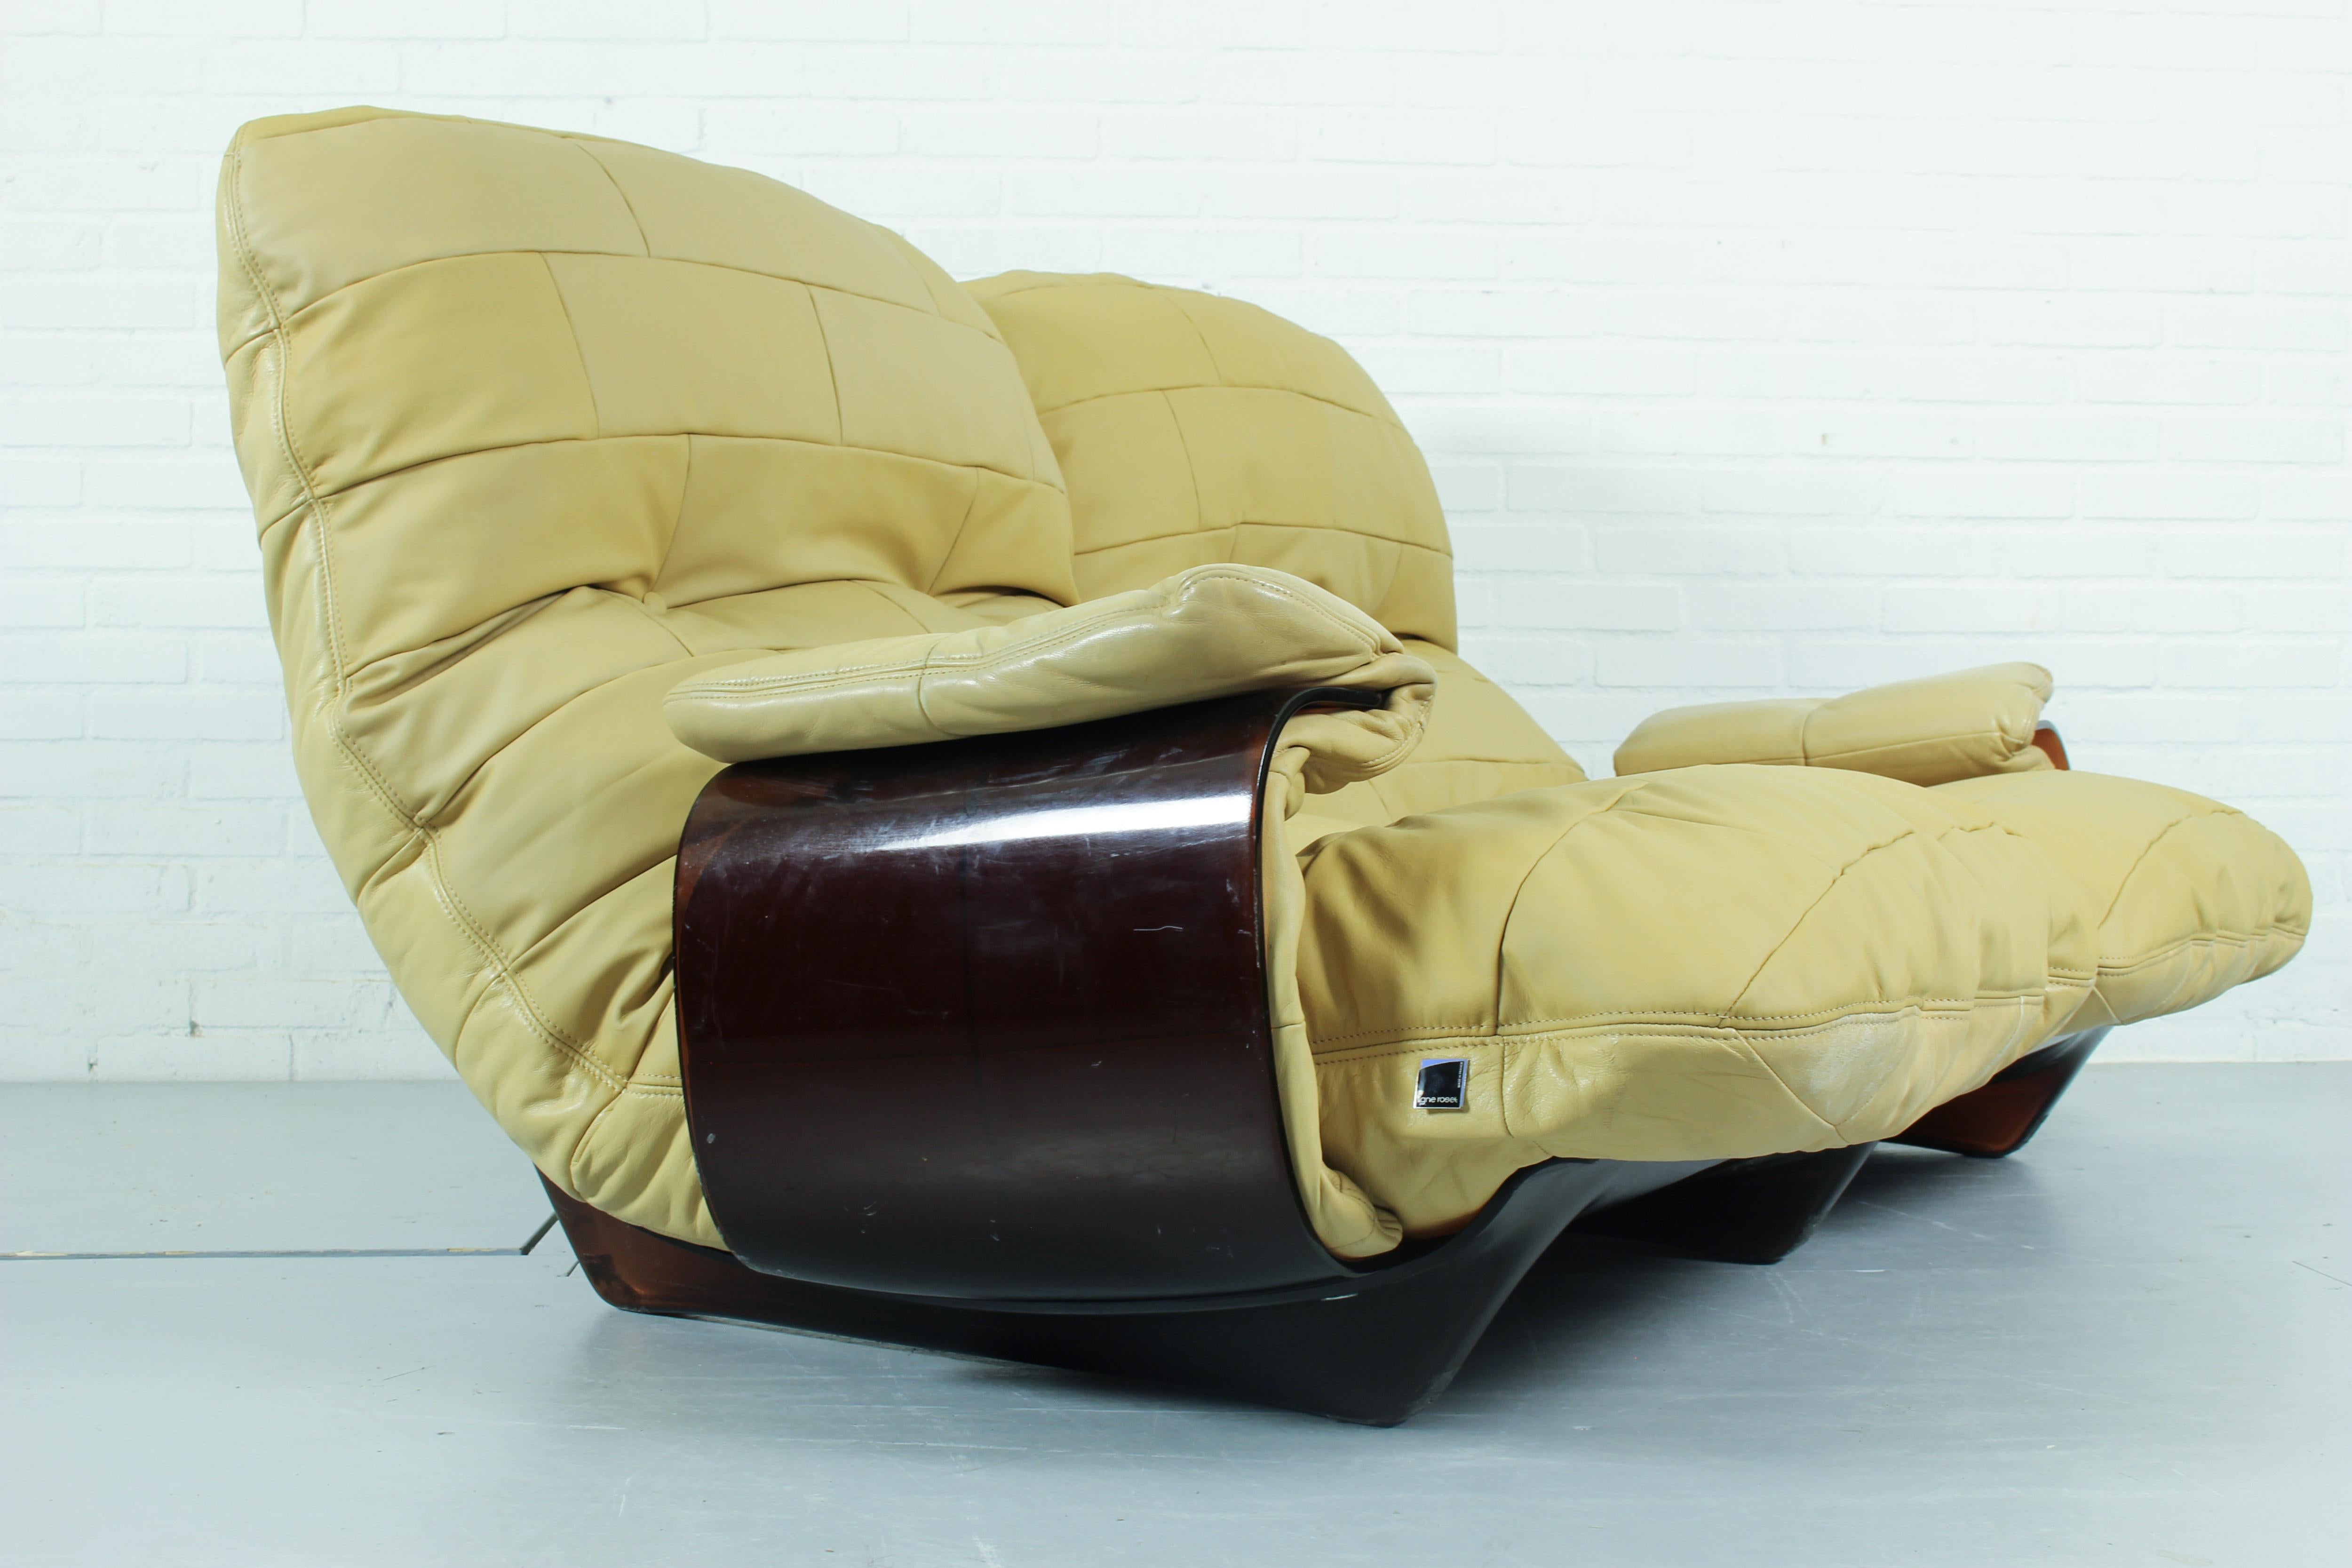 Famous Marsala Sofa von Michel Ducaroy für Ligne Roset, 1970er Jahre. Er besteht aus einer braunen, thermogeformten Plexiglasstruktur, auf der zwei große Schaumstoffkissen liegen, die mit dickem, sandfarbenem Leder bezogen sind. Zwei Armlehnen, die